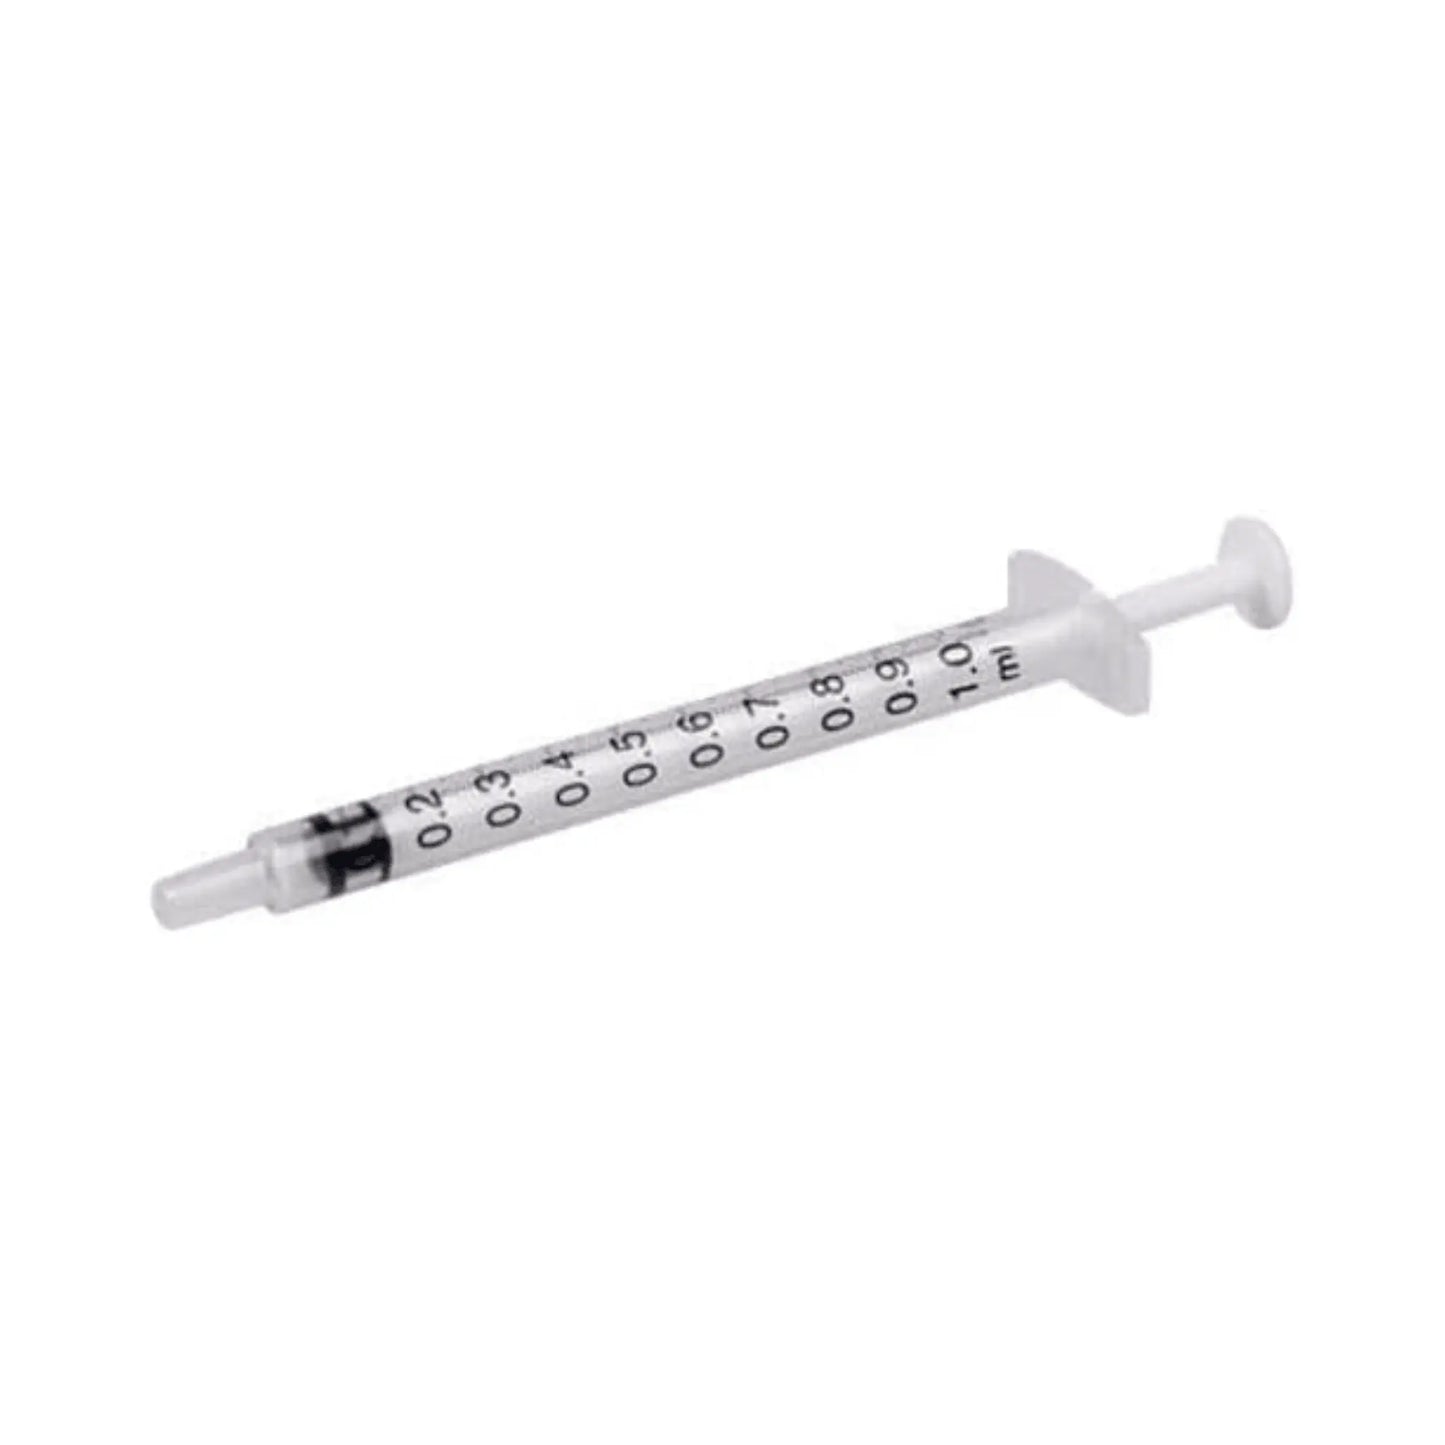 Terumo 1ml Disposable 20 Syringes